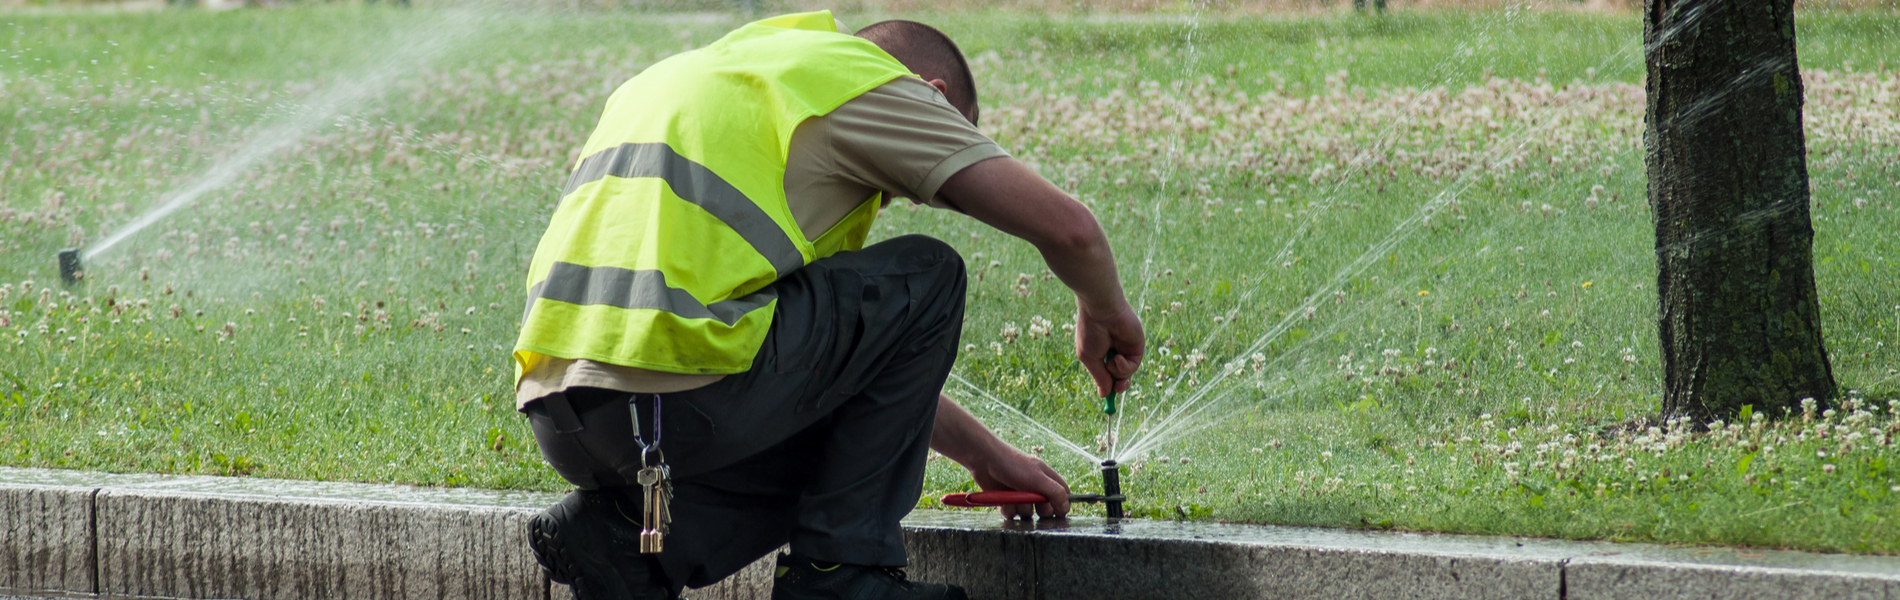 Ladue, MO irrigation repair | professional Ladue, MO irrigation repair services | Lawn Sprinklers St. Louis